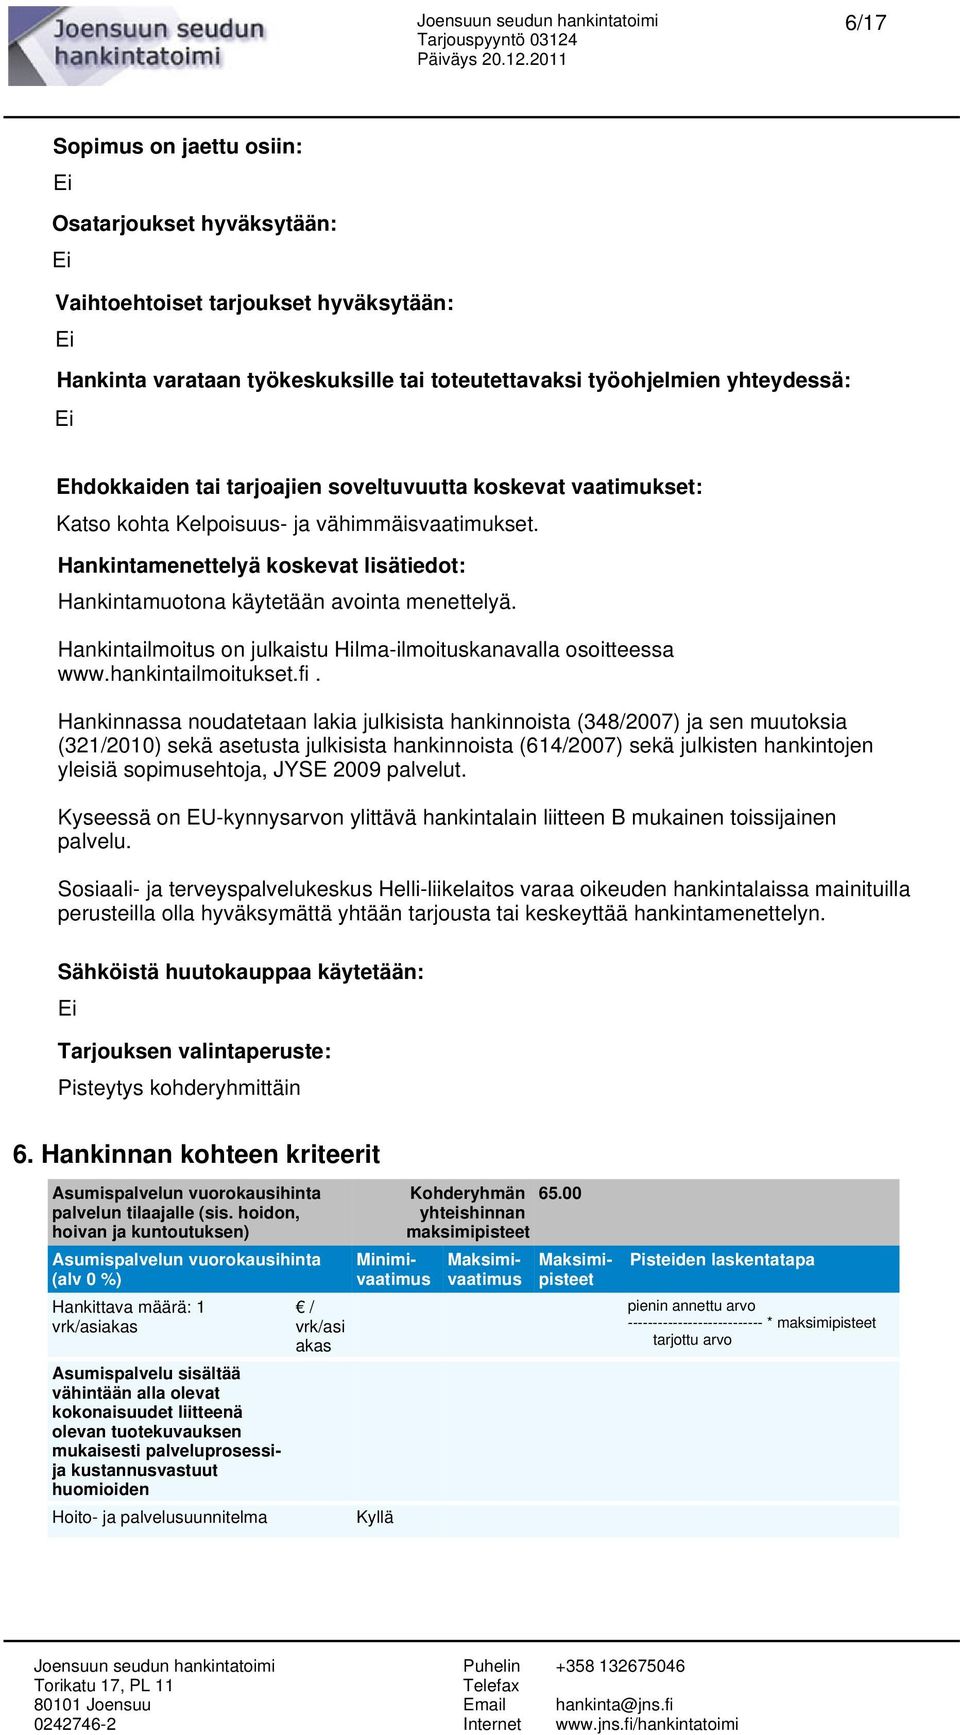 Hankintailmoitus on julkaistu Hilma-ilmoituskanavalla osoitteessa www.hankintailmoitukset.fi.